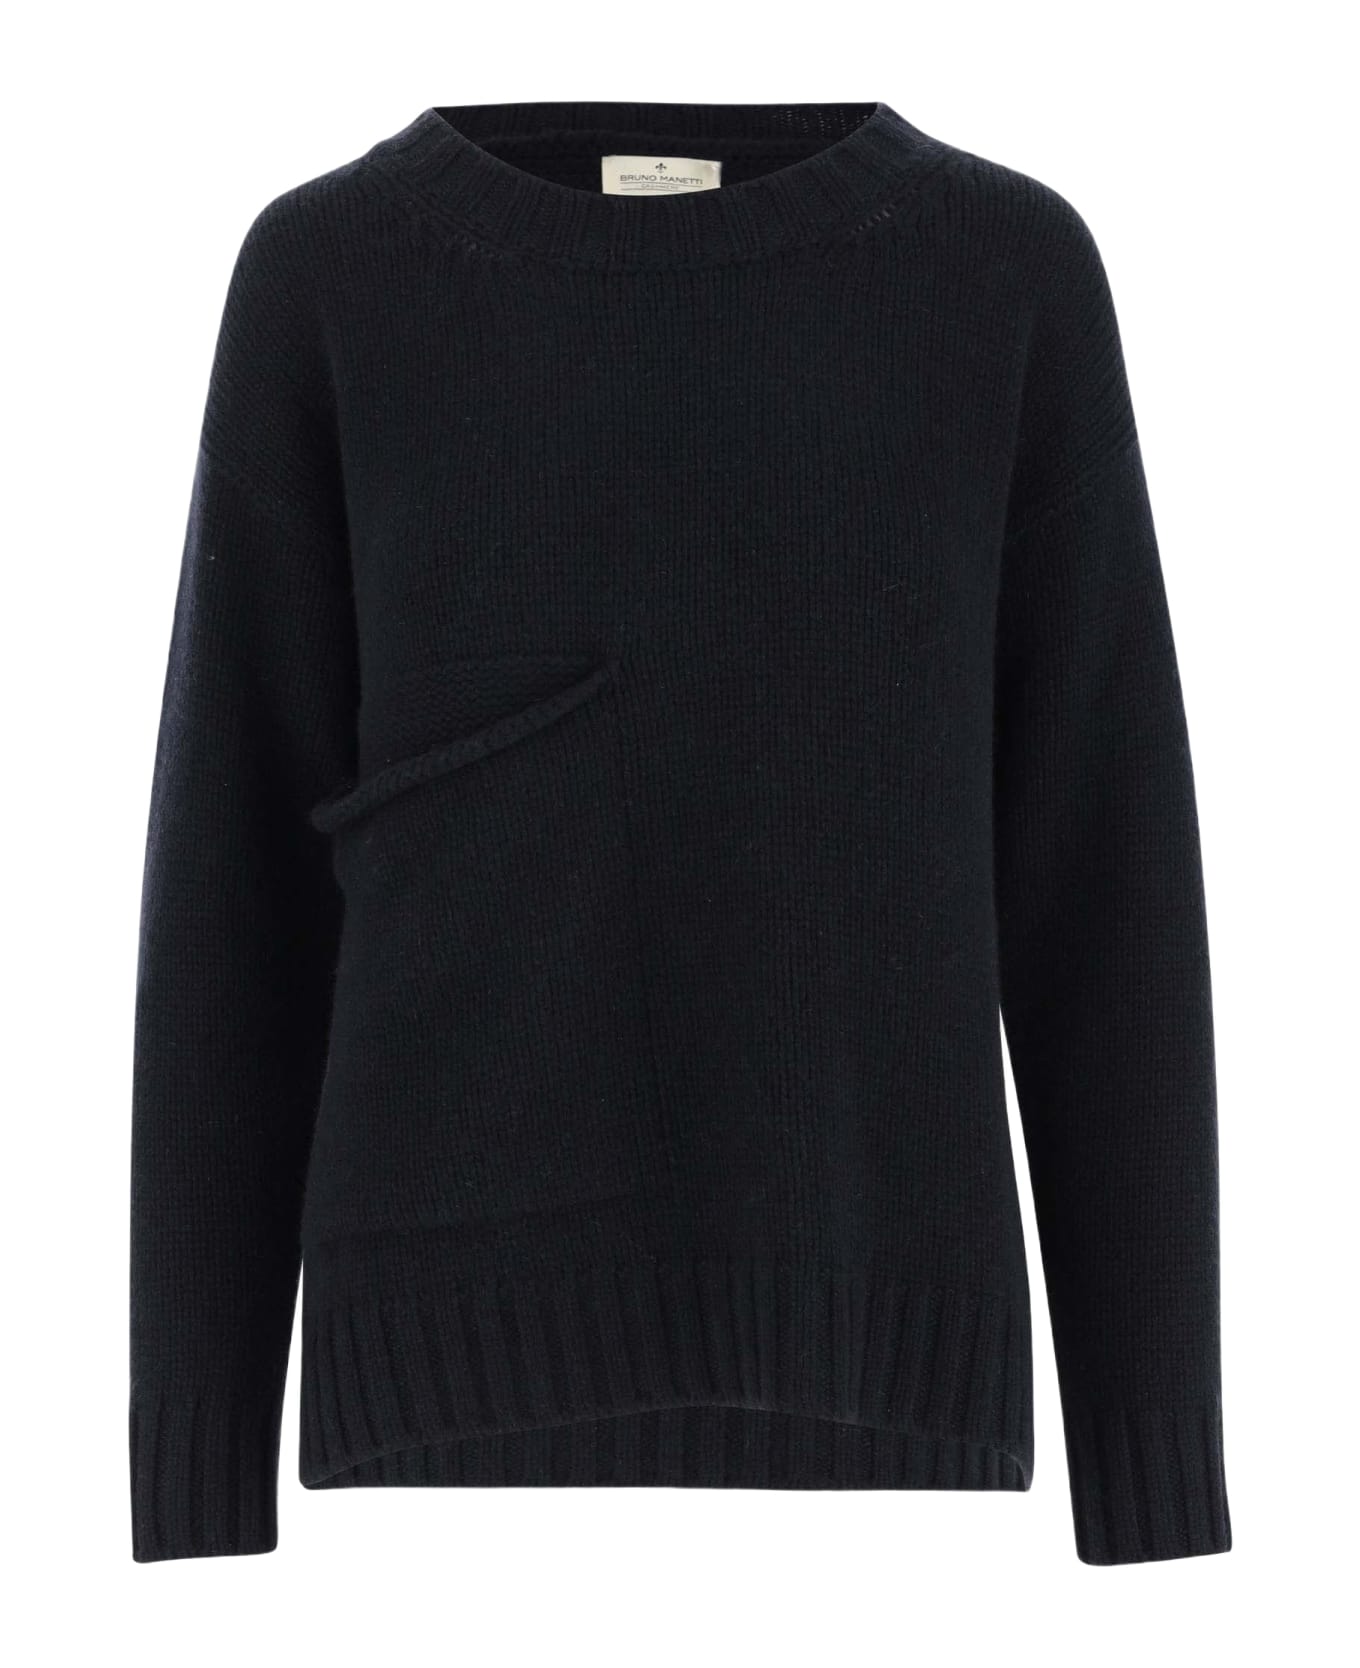 Bruno Manetti Cashmere Sweater - Black